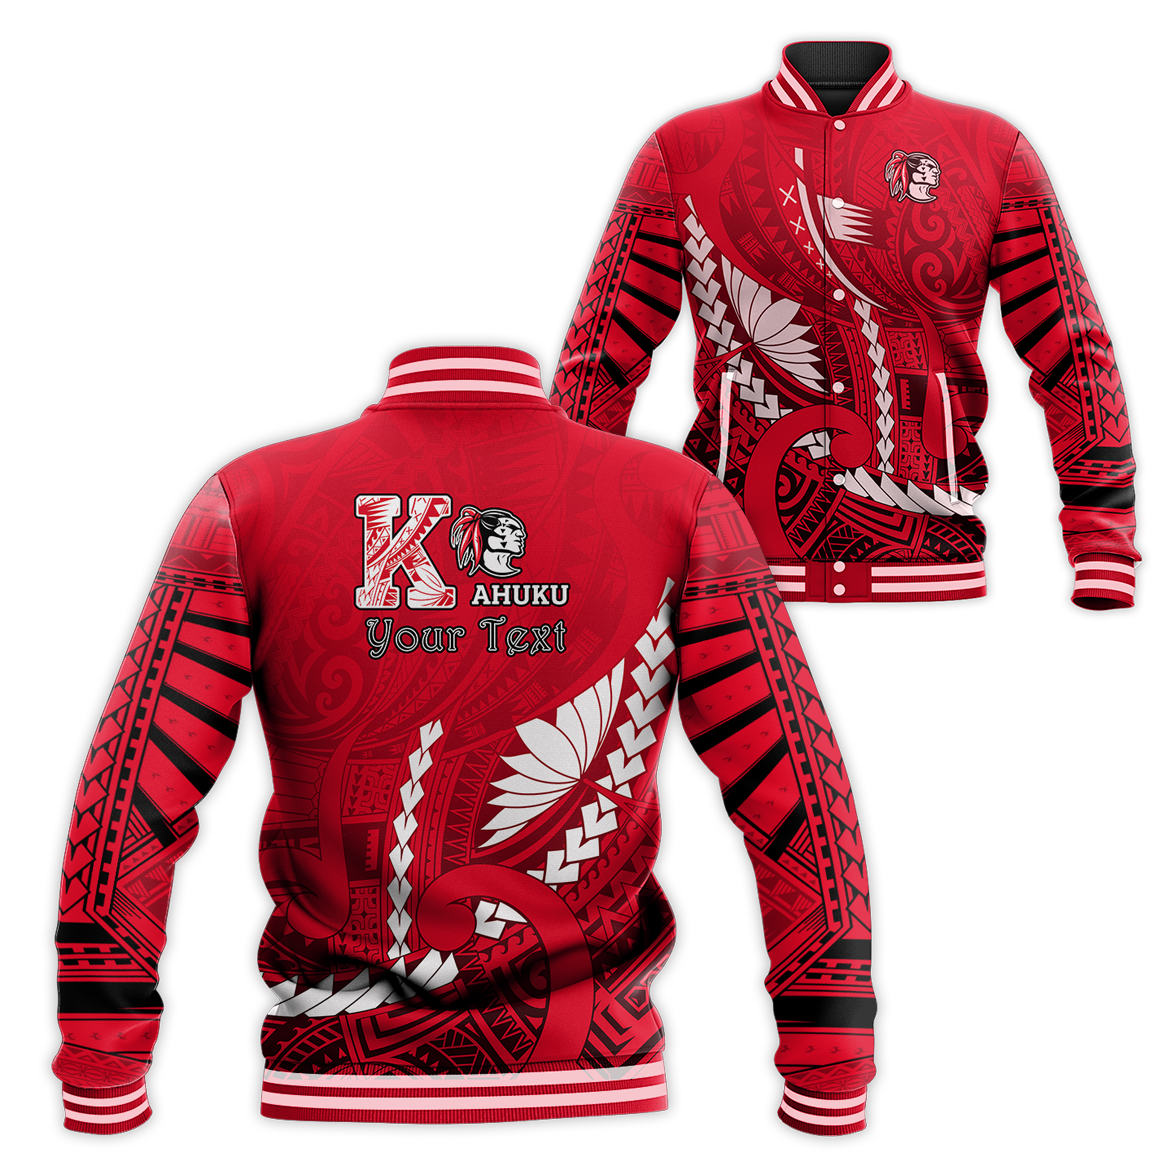 (Custom Personalised) Kahuku Shool Baseball Jacket Enthusiasm Red Raiders LT13 Unisex Red - Polynesian Pride